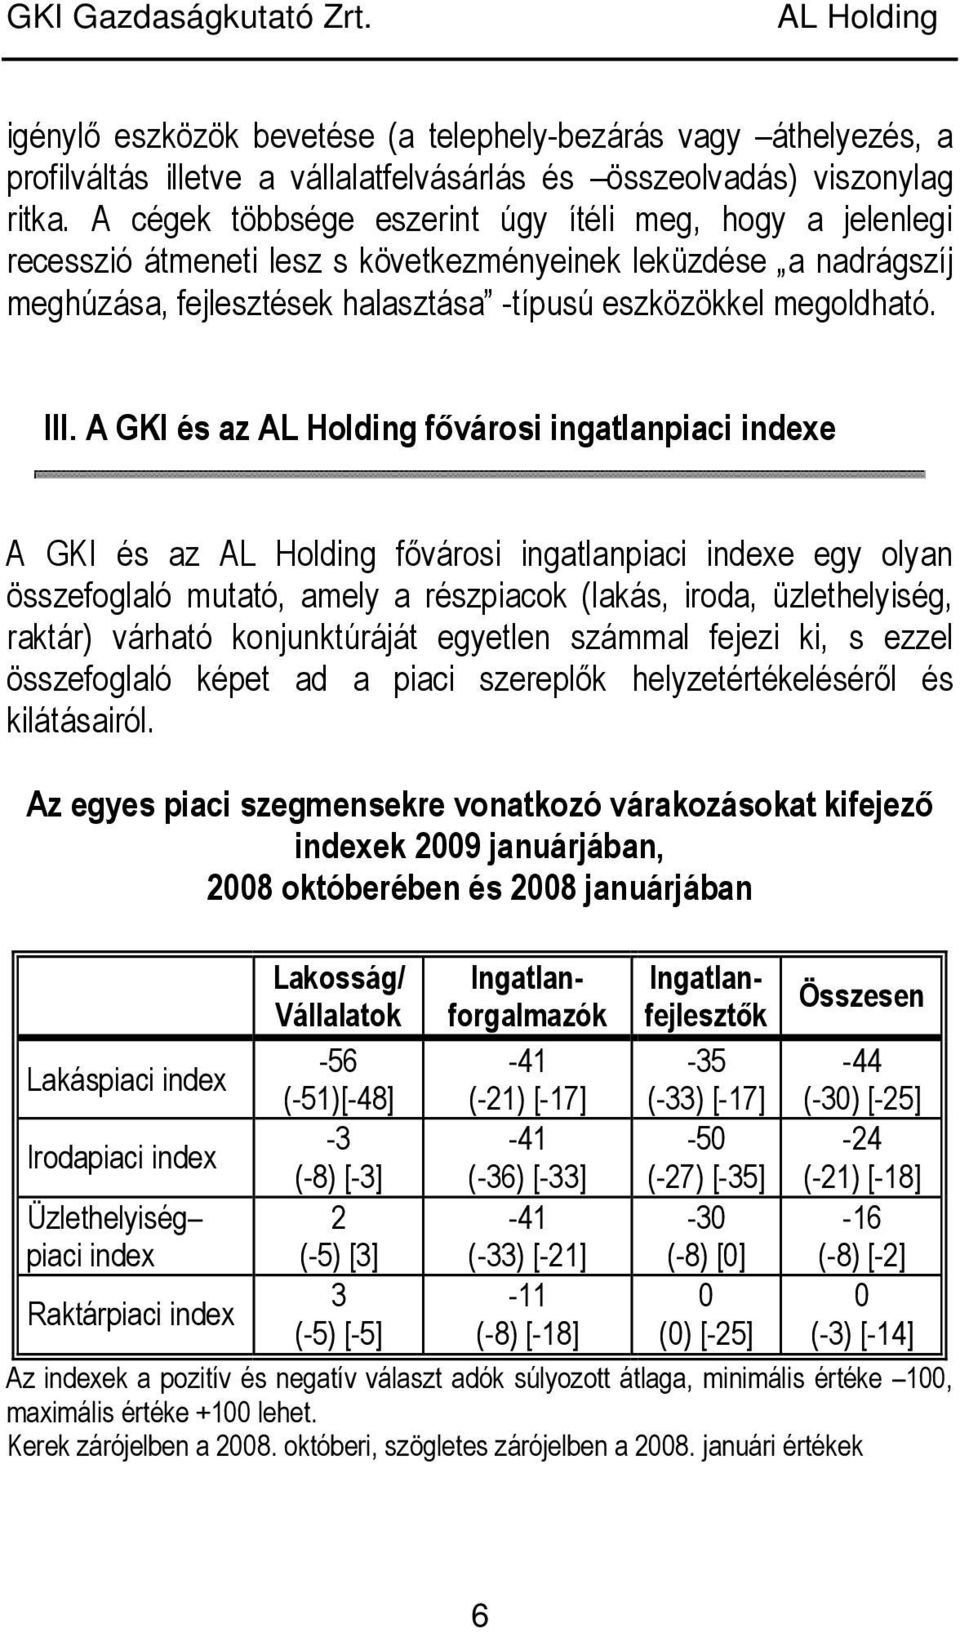 A GKI és az fıvárosi ingatlanpiaci indexe A GKI és az fıvárosi ingatlanpiaci indexe egy olyan összefoglaló mutató, amely a részpiacok (lakás, iroda, üzlethelyiség, raktár) várható konjunktúráját